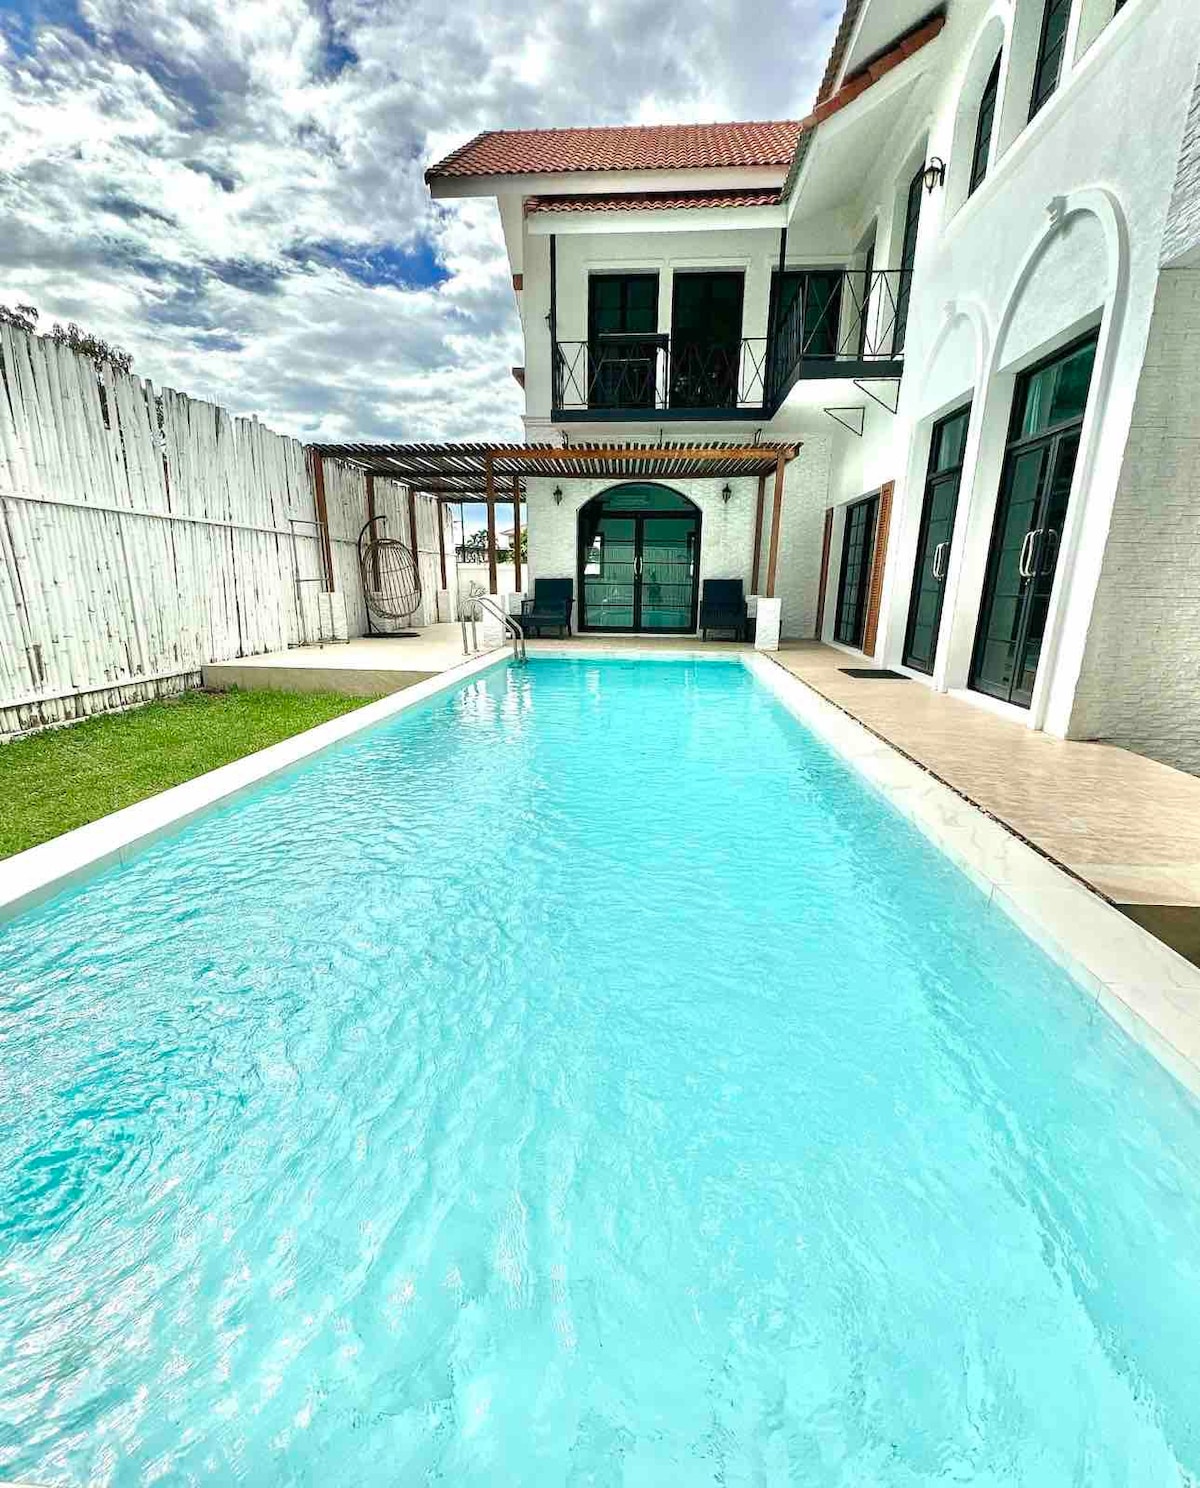 Pool villa near ChiangMai Airport 4 Bedrooms